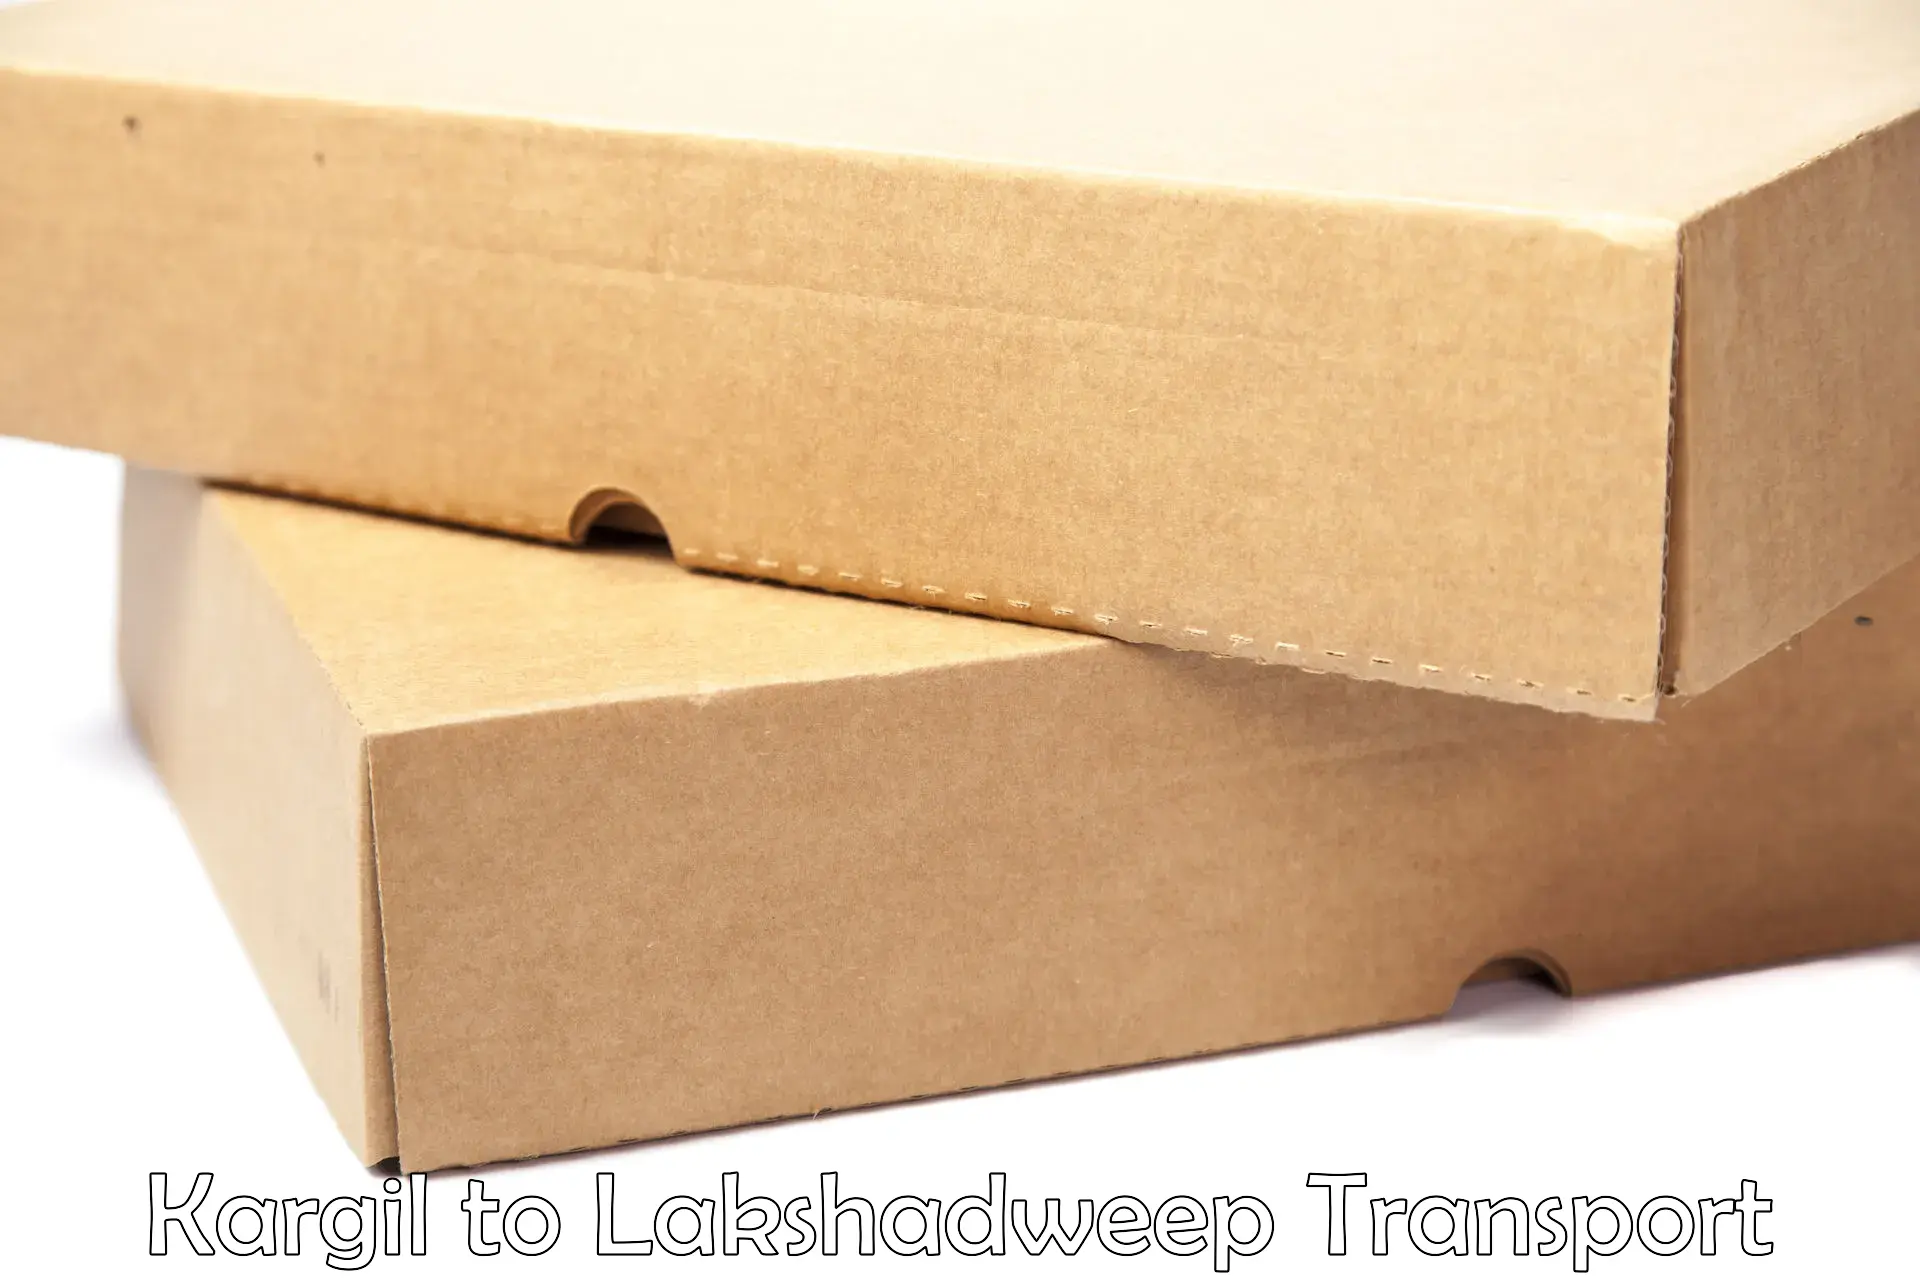 Cargo transport services Kargil to Lakshadweep